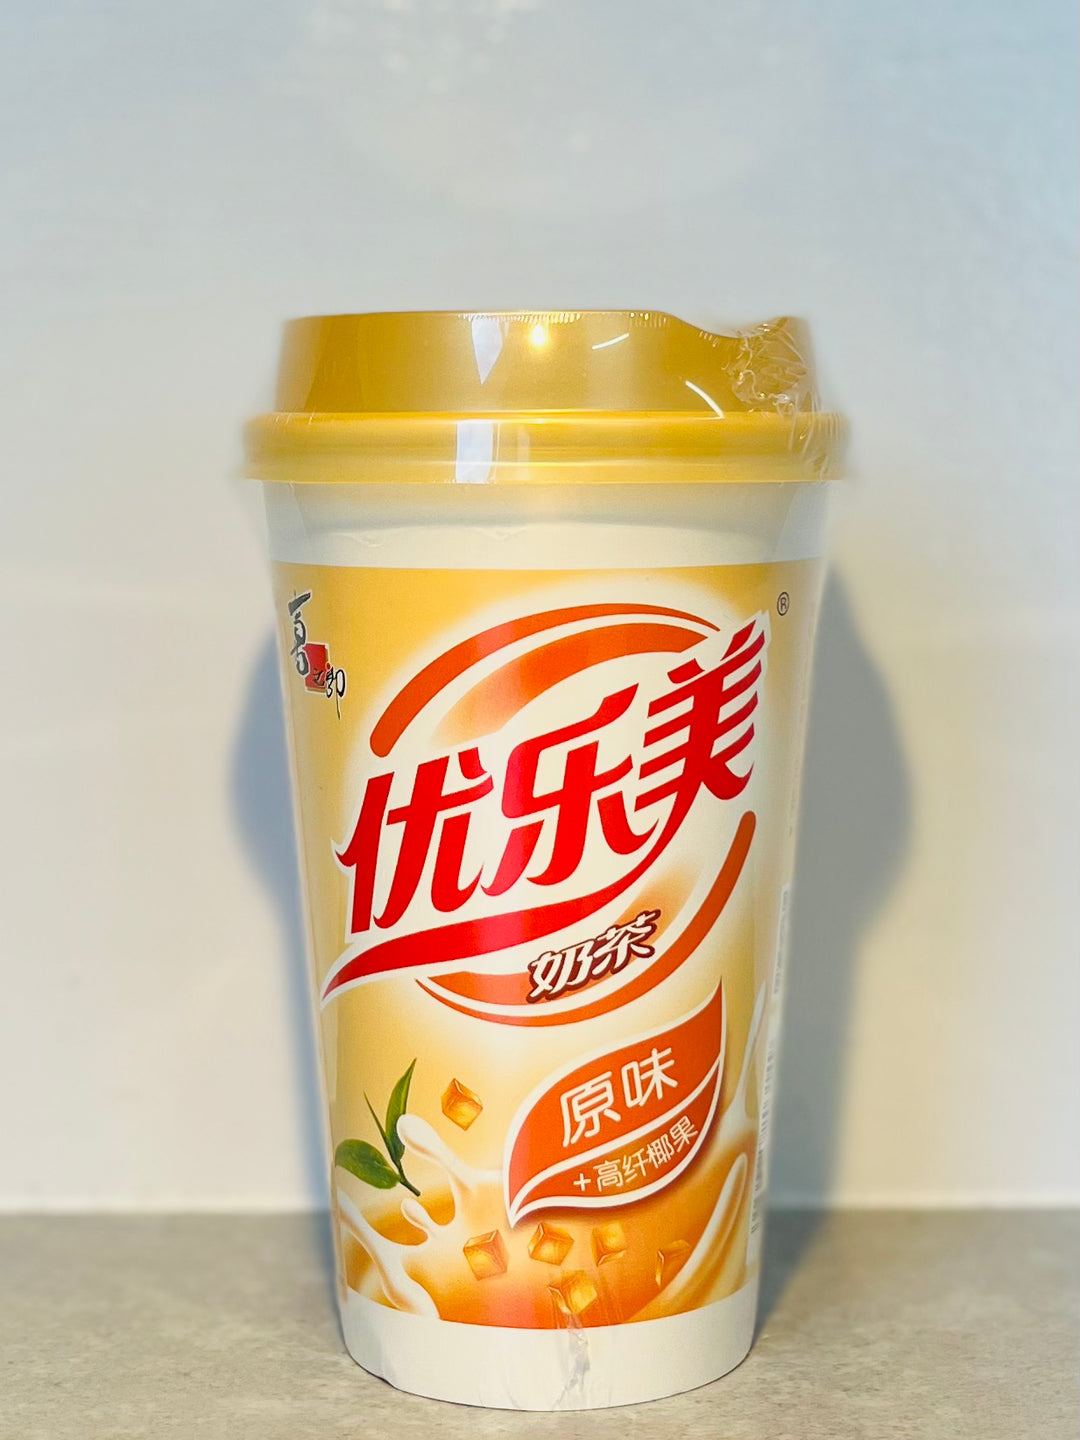 优乐美椰果奶茶原味80g YLM Milk Tea Original Flavour